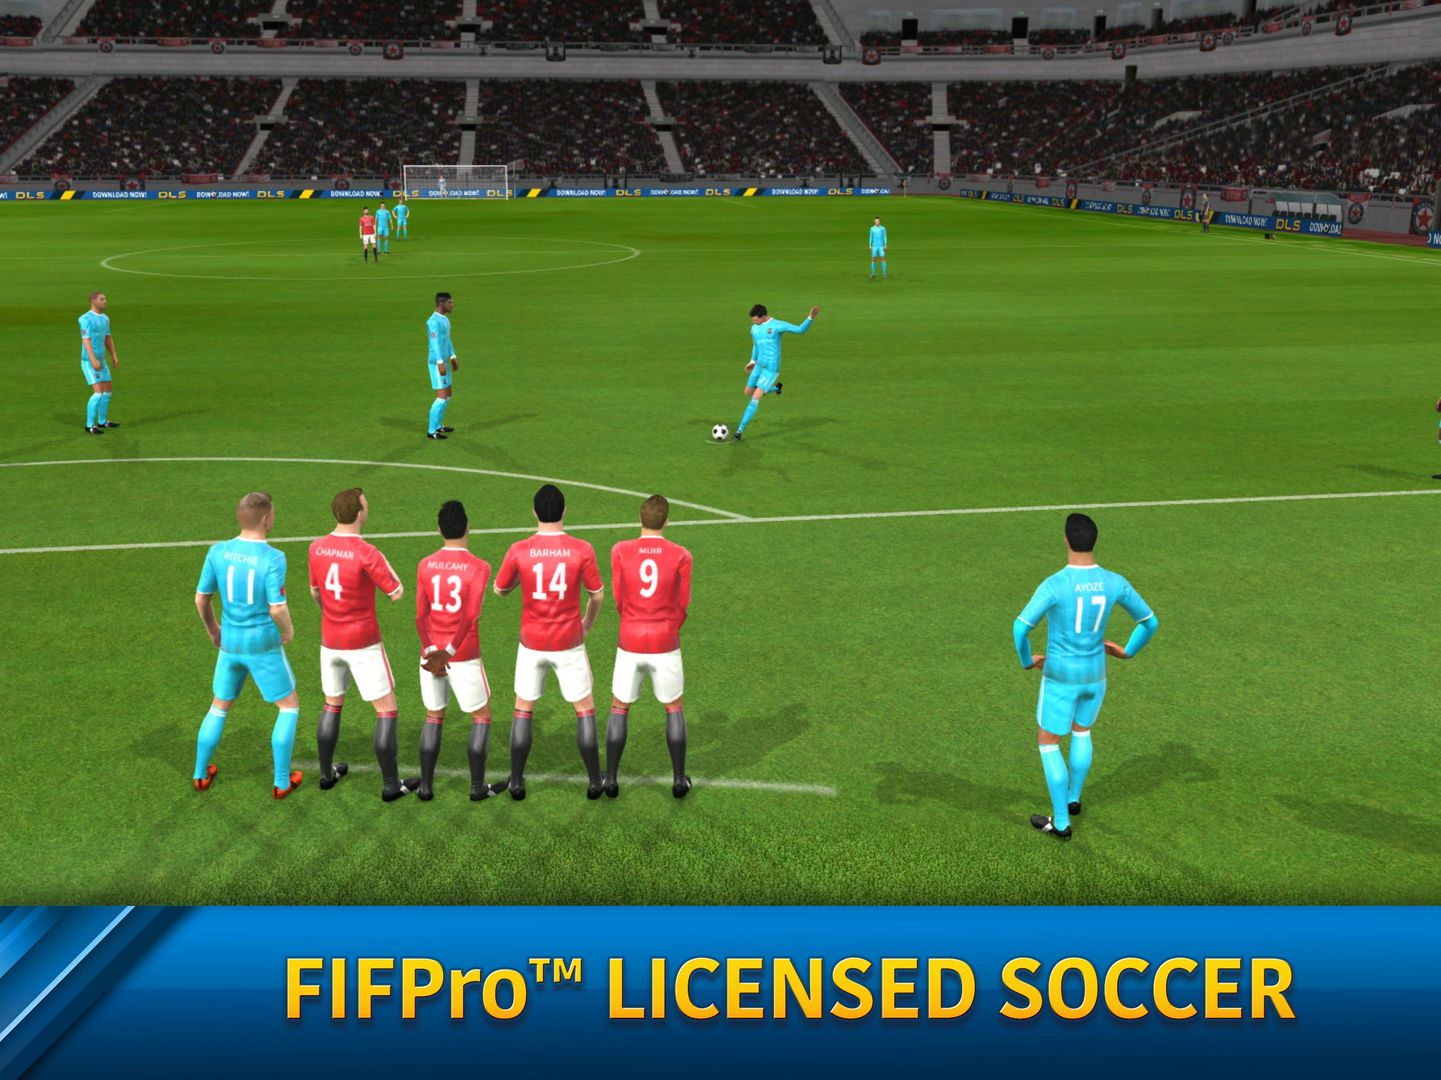 Screenshot of Dream League Soccer